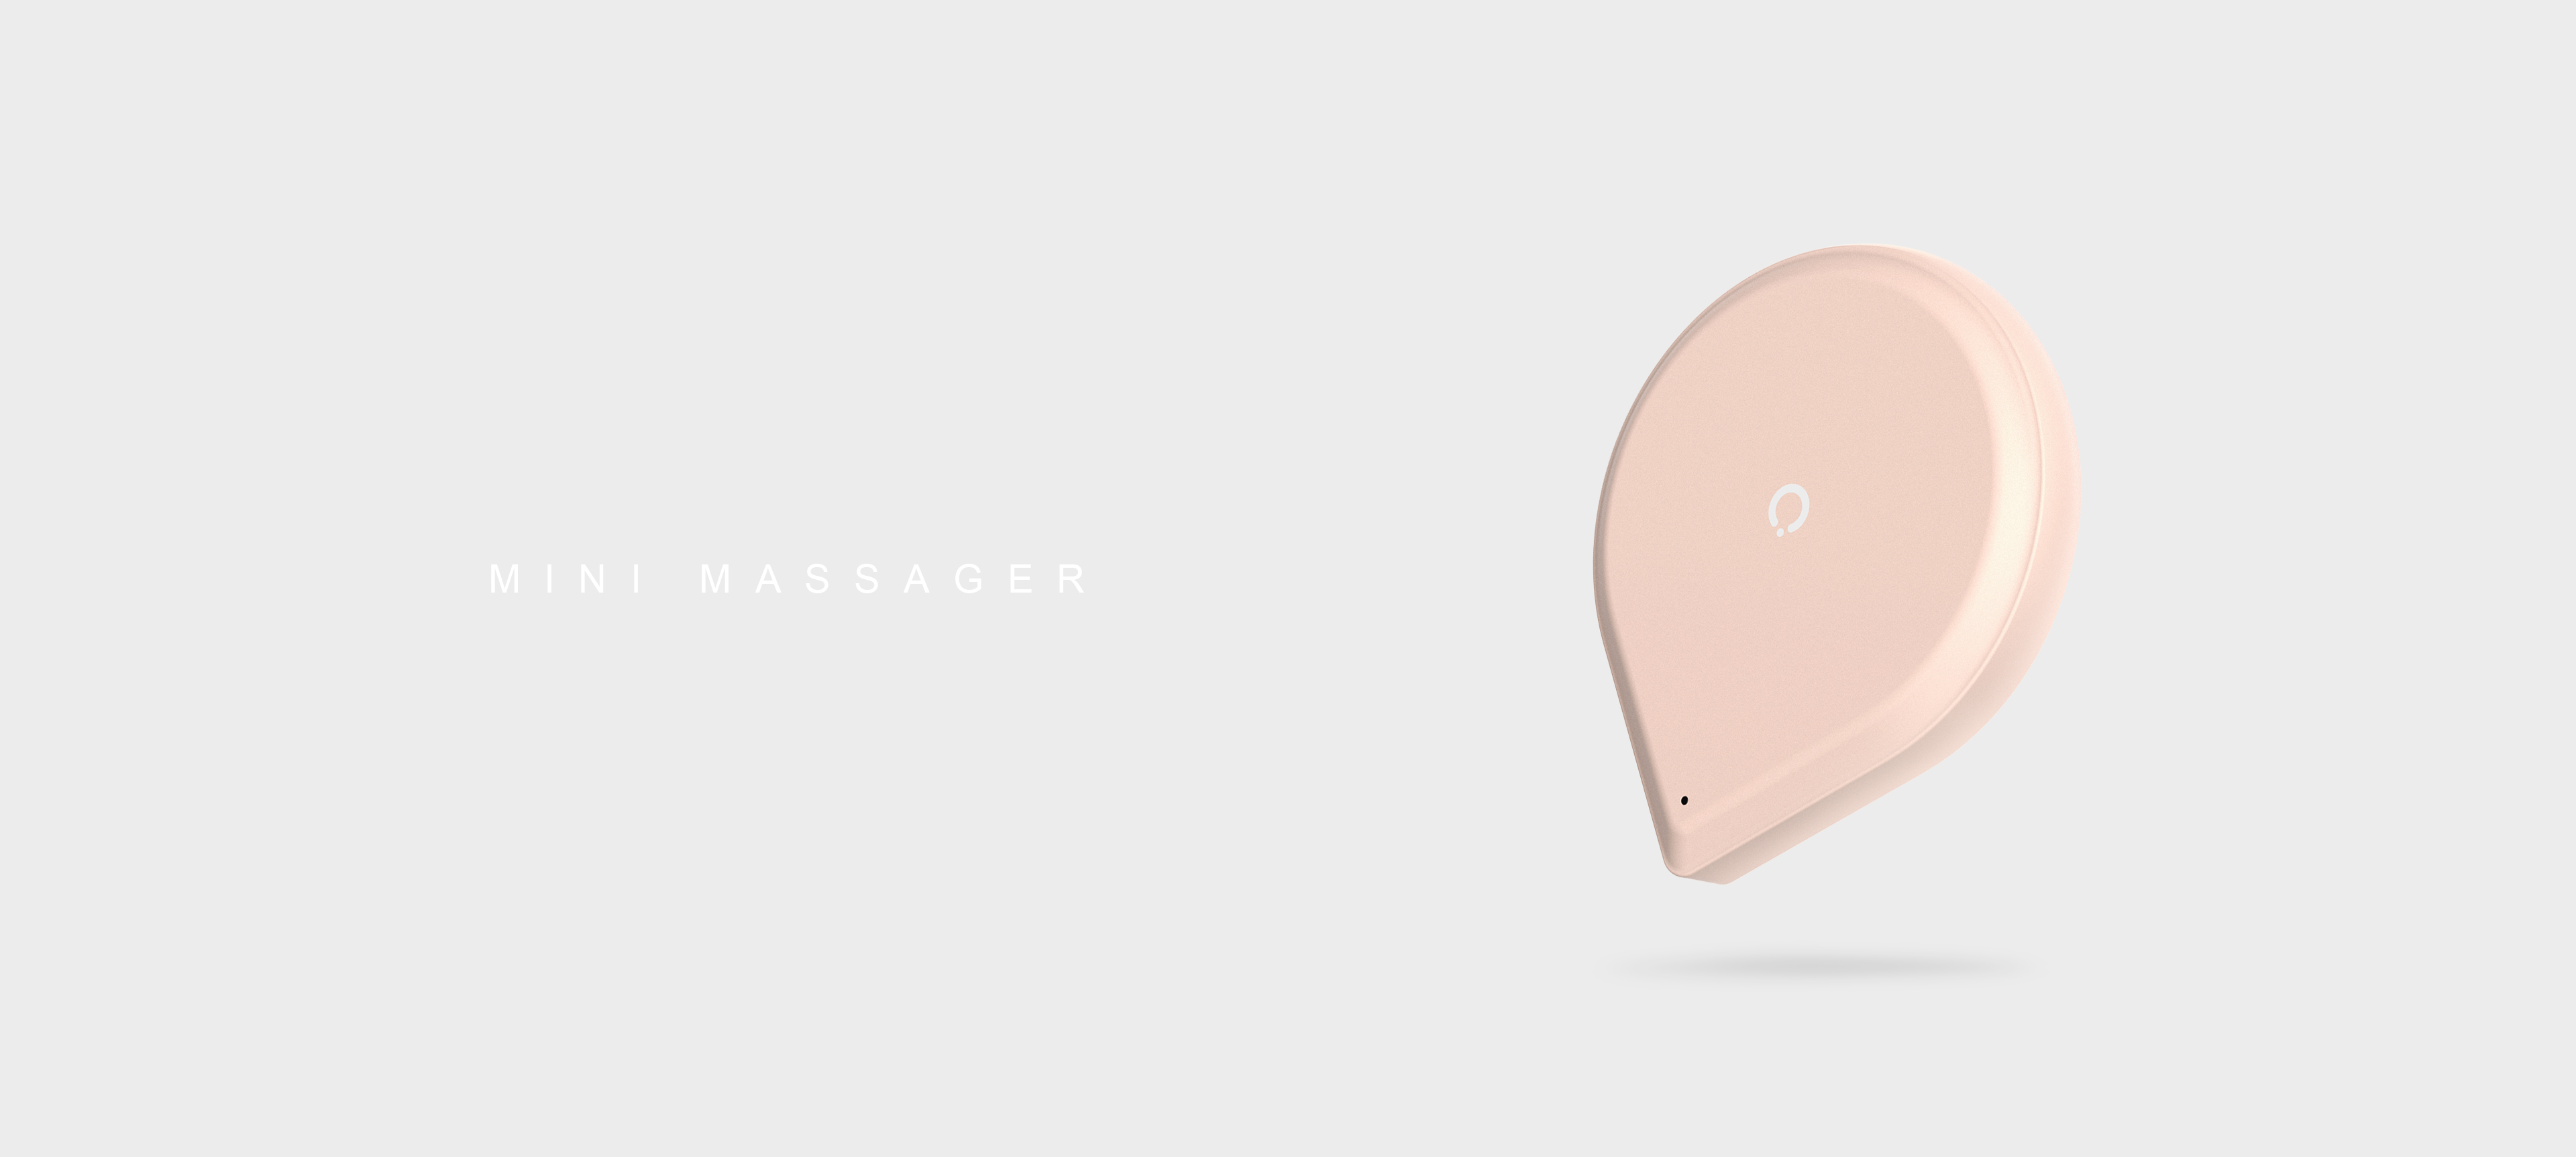 Mini Massager_心品工业设计